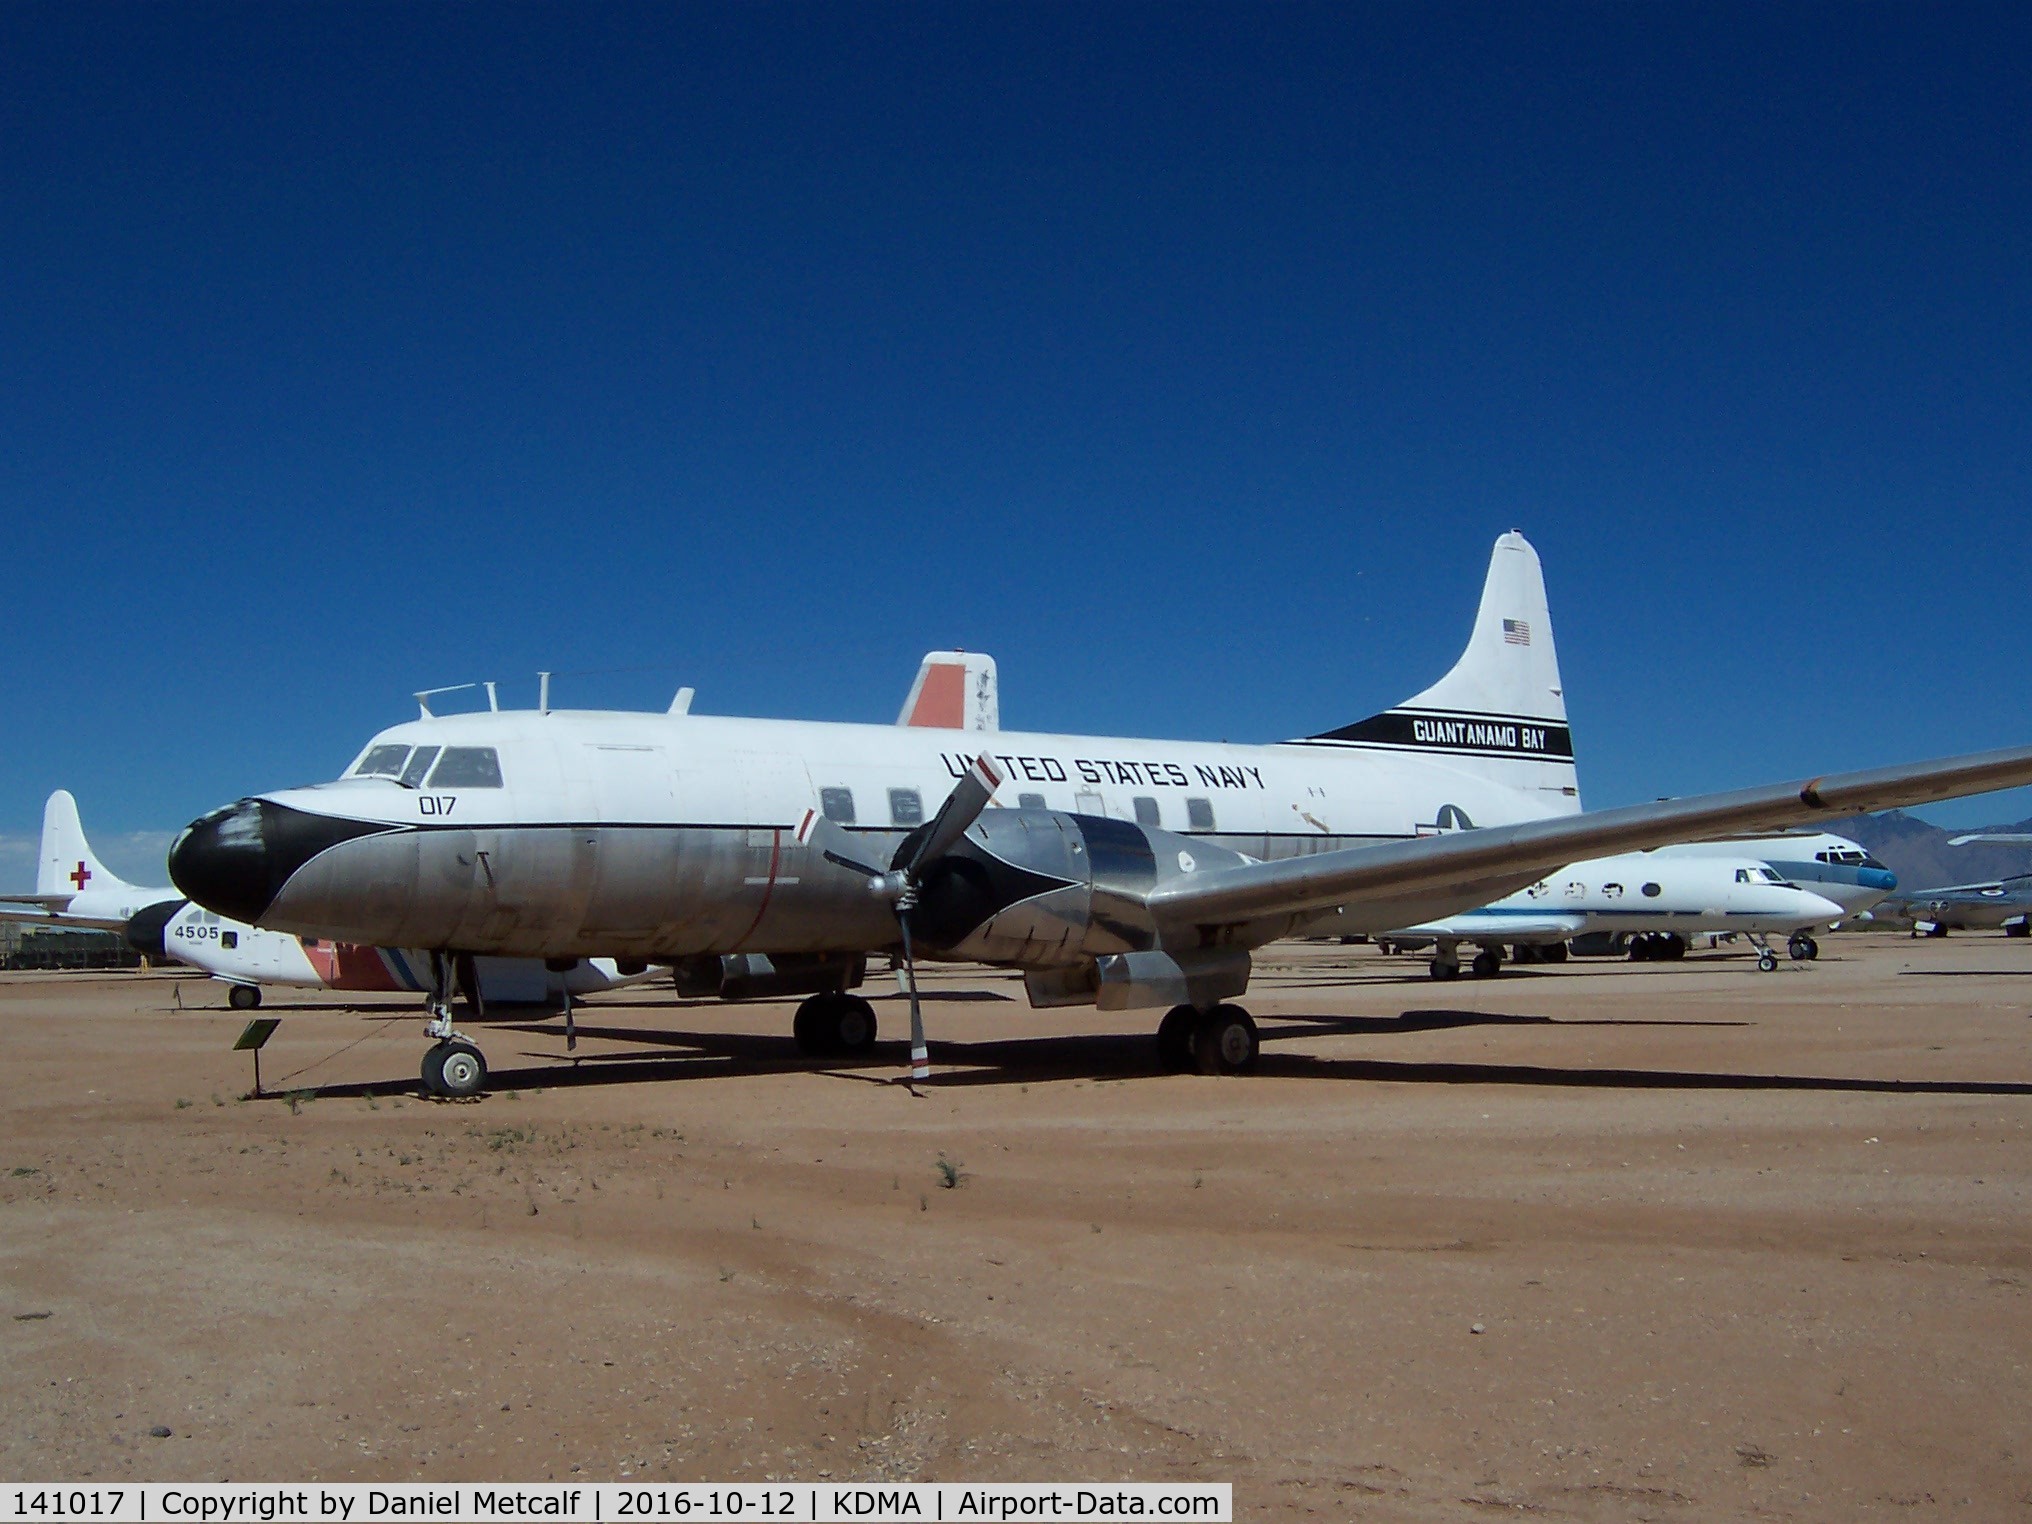 141017, 1956 Convair C-131F (R4Y-1) Samaritan C/N 300, Pima Air & Space Museum